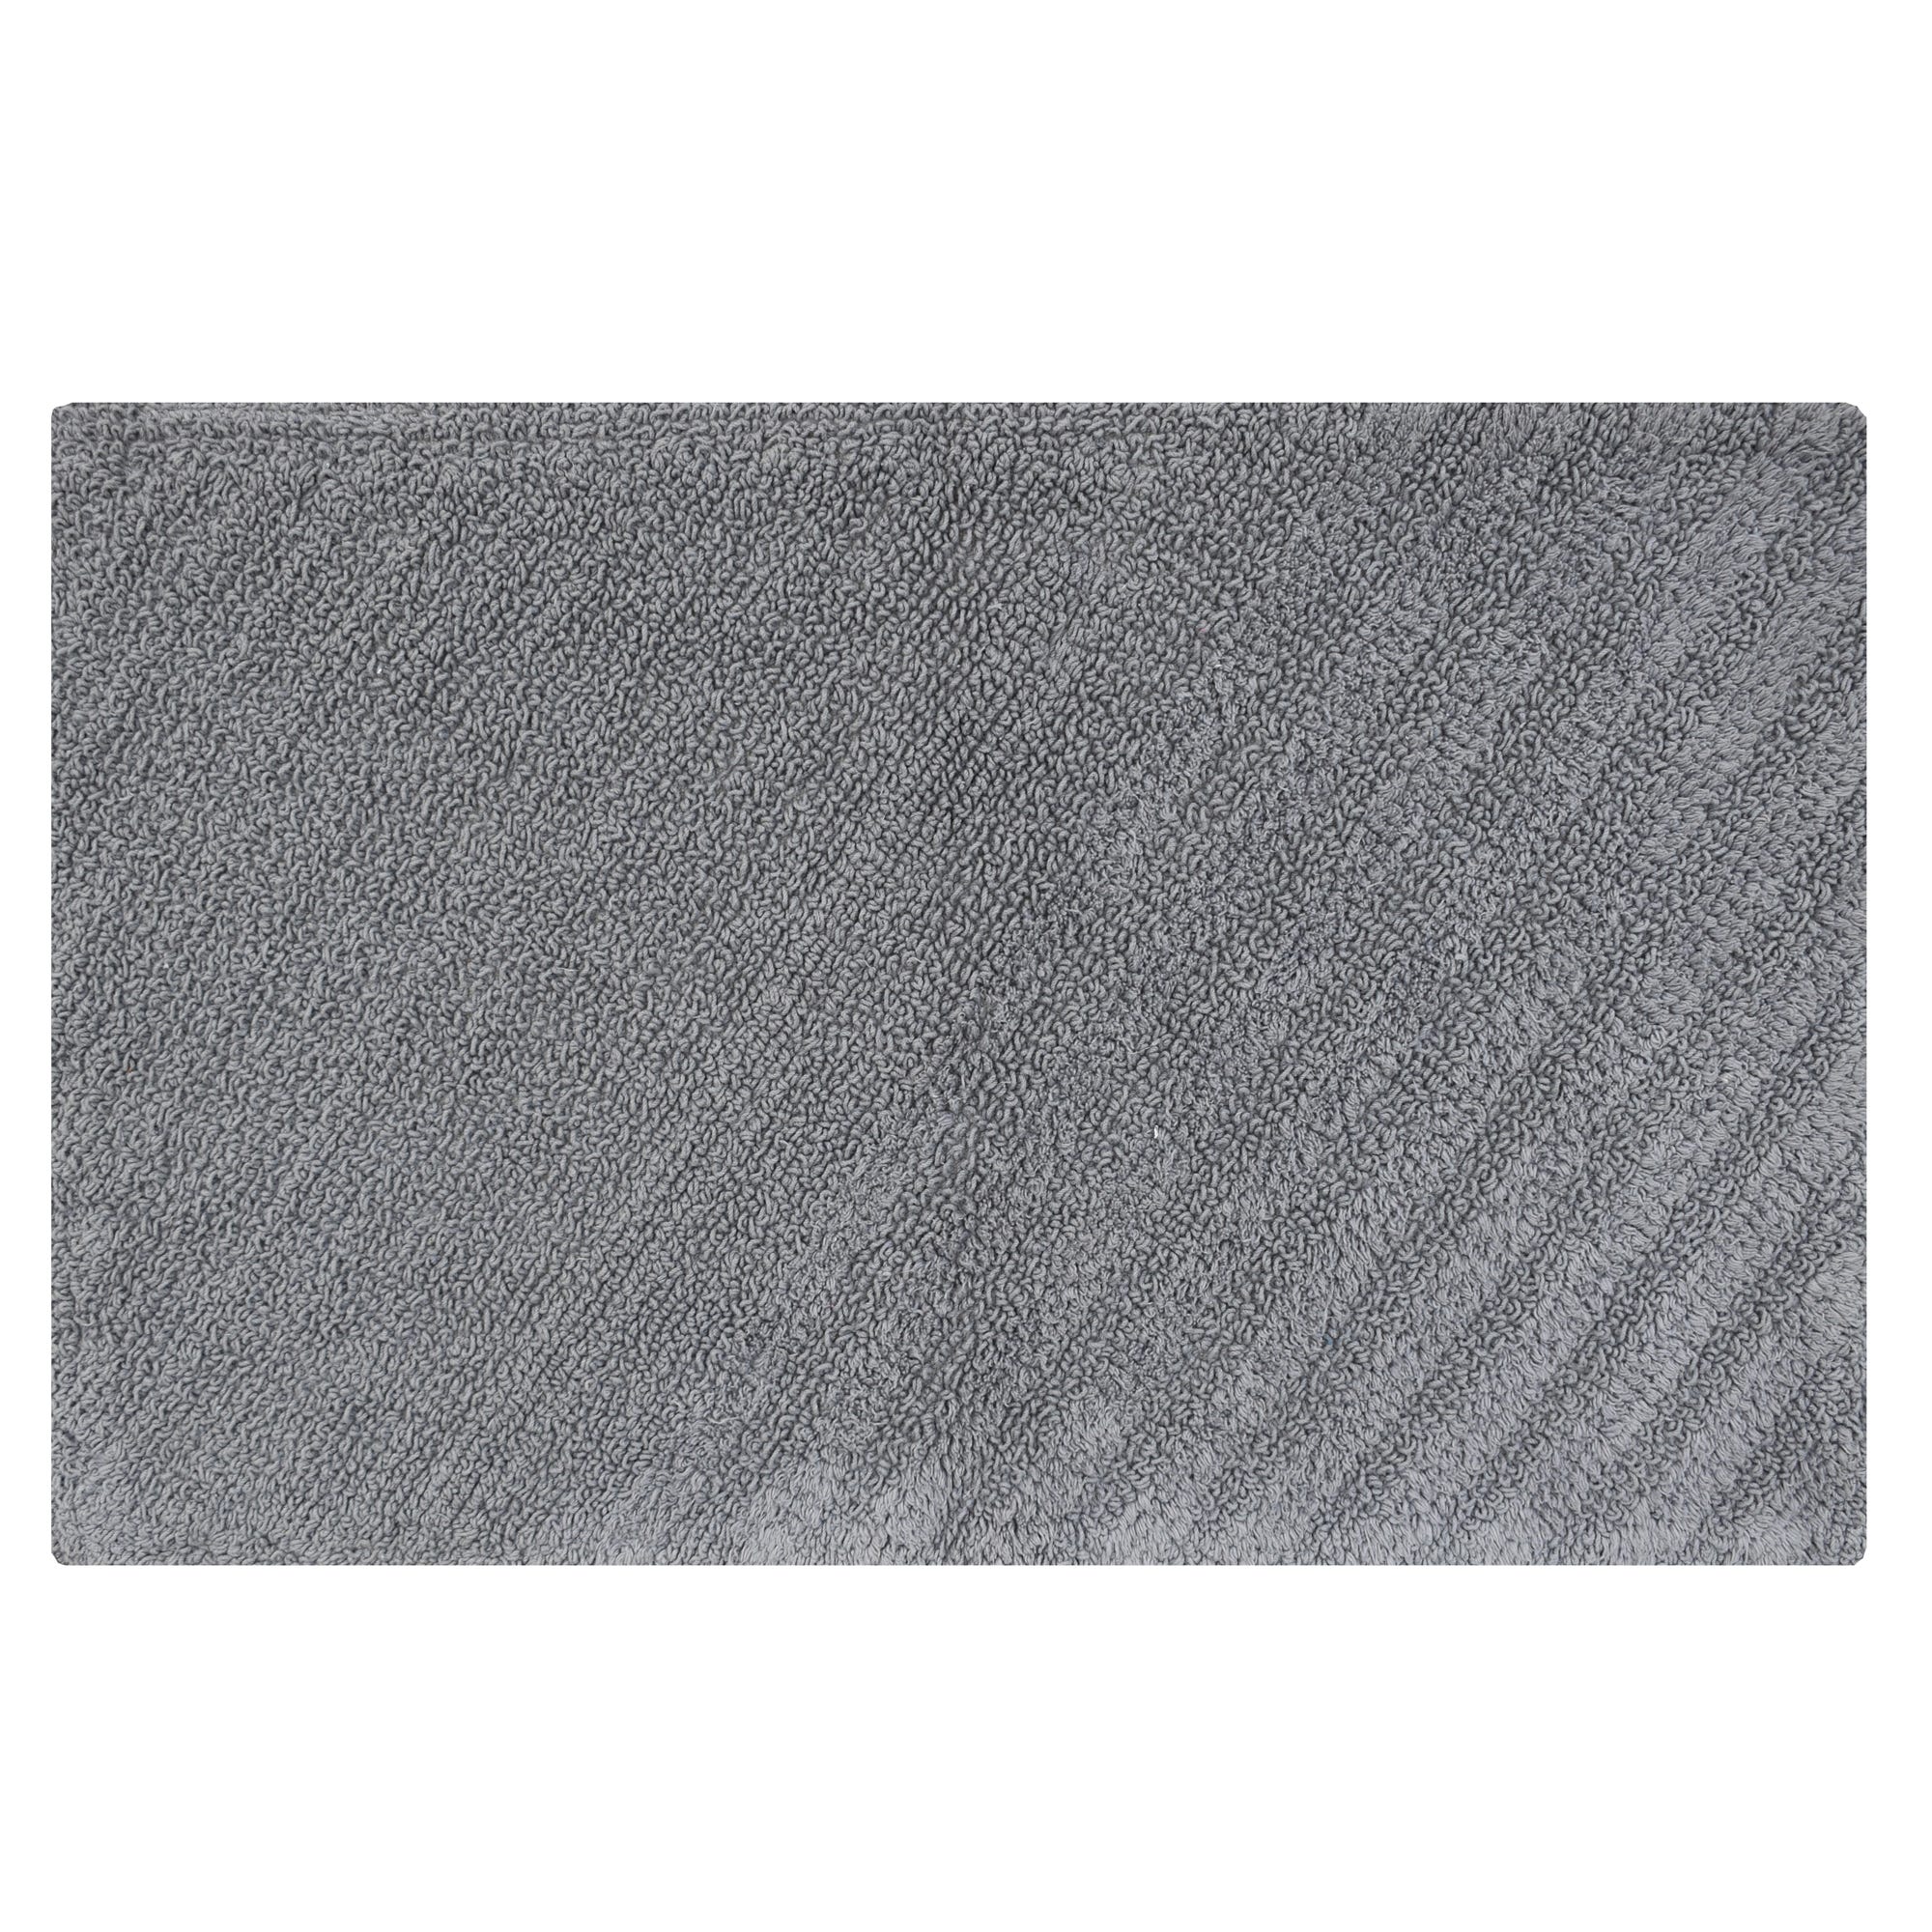 Tappeto bagno rettangolare Remix granit in cotone grigio 120 x 60 cmØ 134  cm